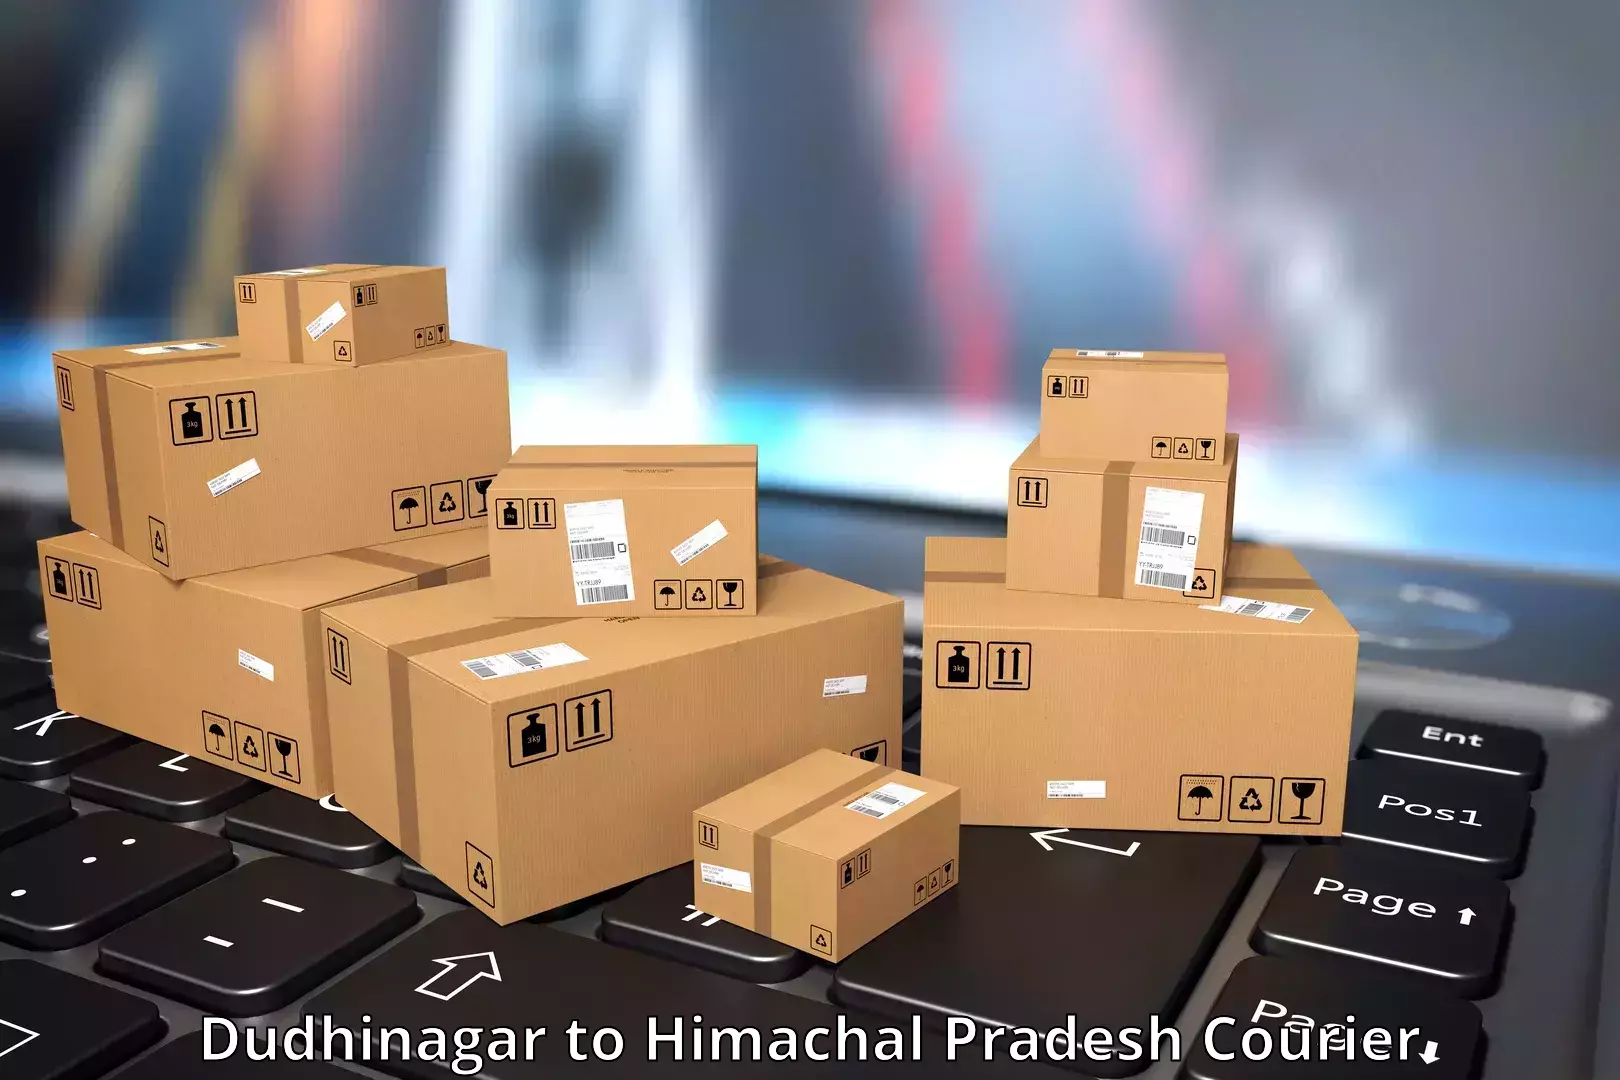 Innovative courier solutions Dudhinagar to Rakkar